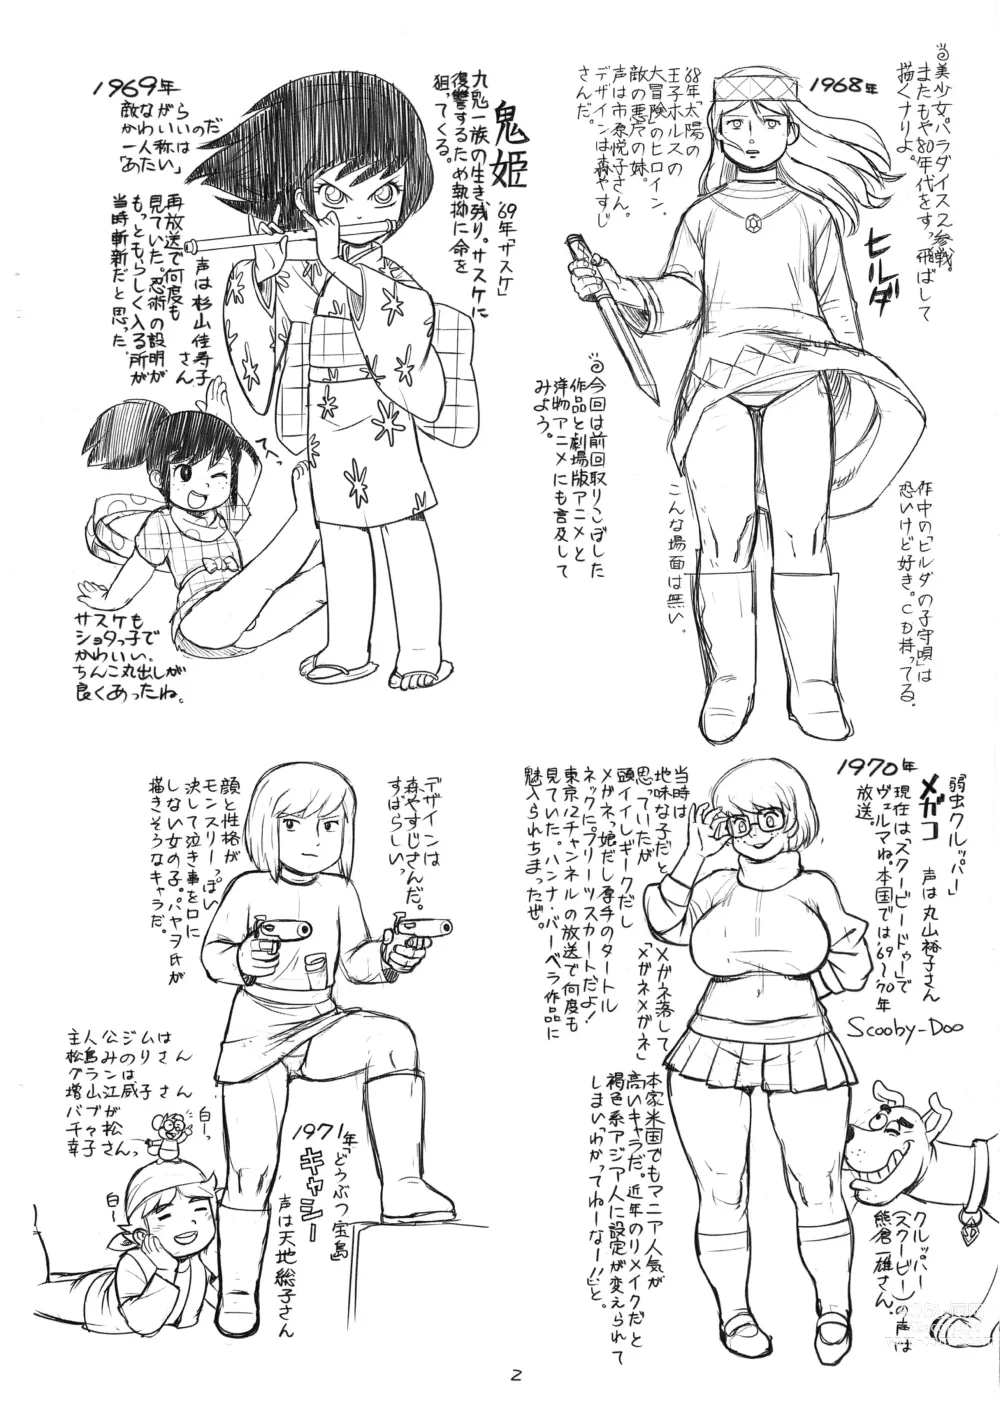 Page 2 of doujinshi Zoku Tsuioku Anime